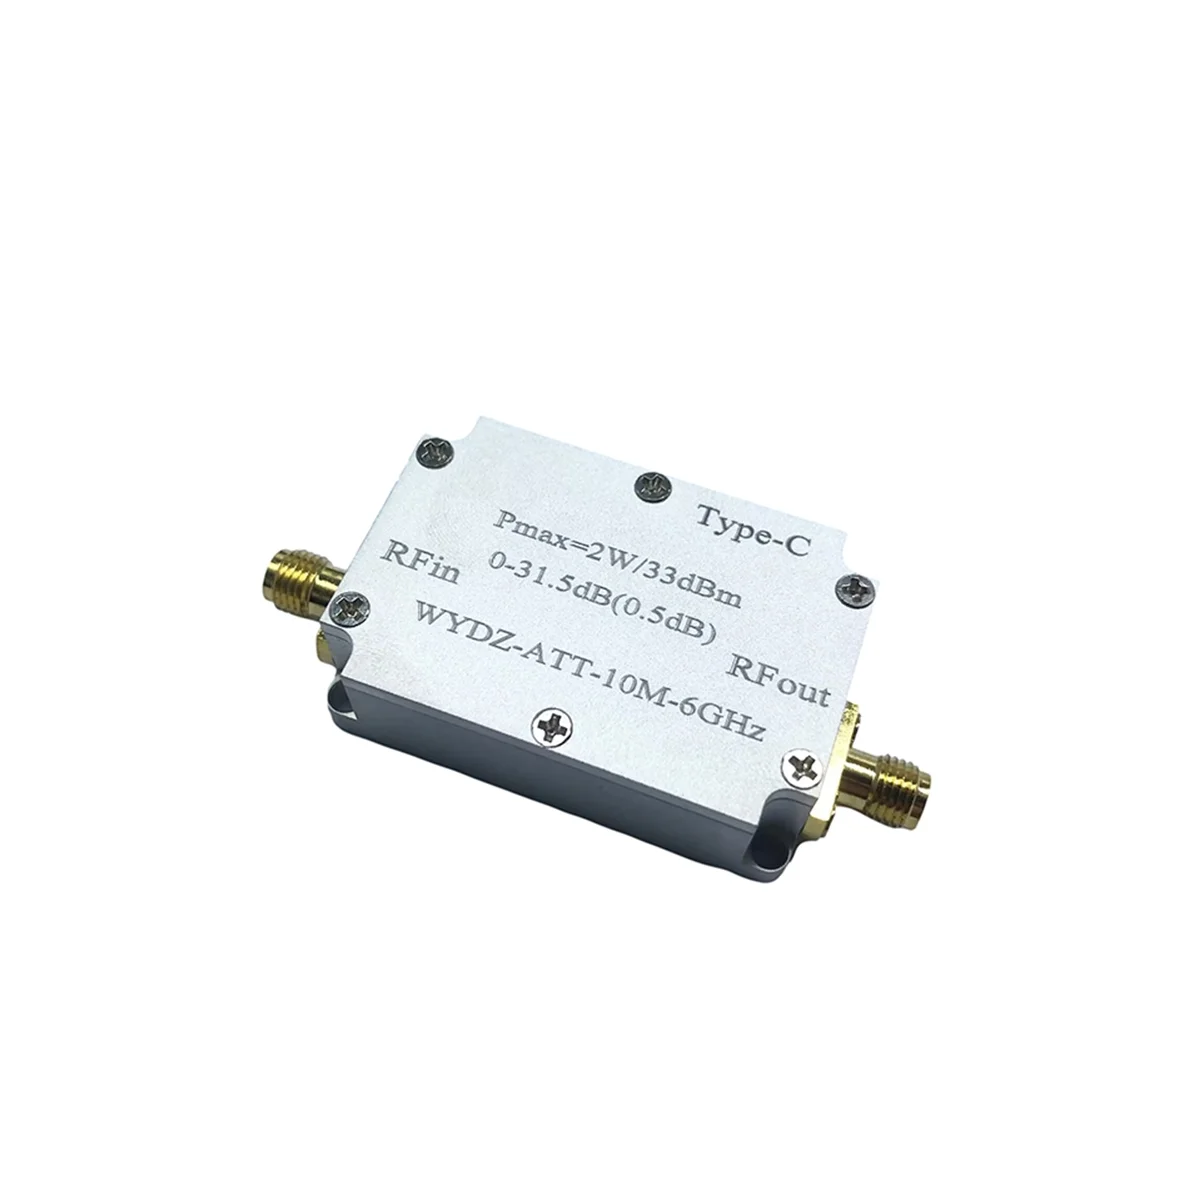 Усилитель с высокой плоскостностью 10 М-6 ГГц, 30 дБ, передающий радиочастотный сигнал или принимающий внешний сигнал, управляющий приемником